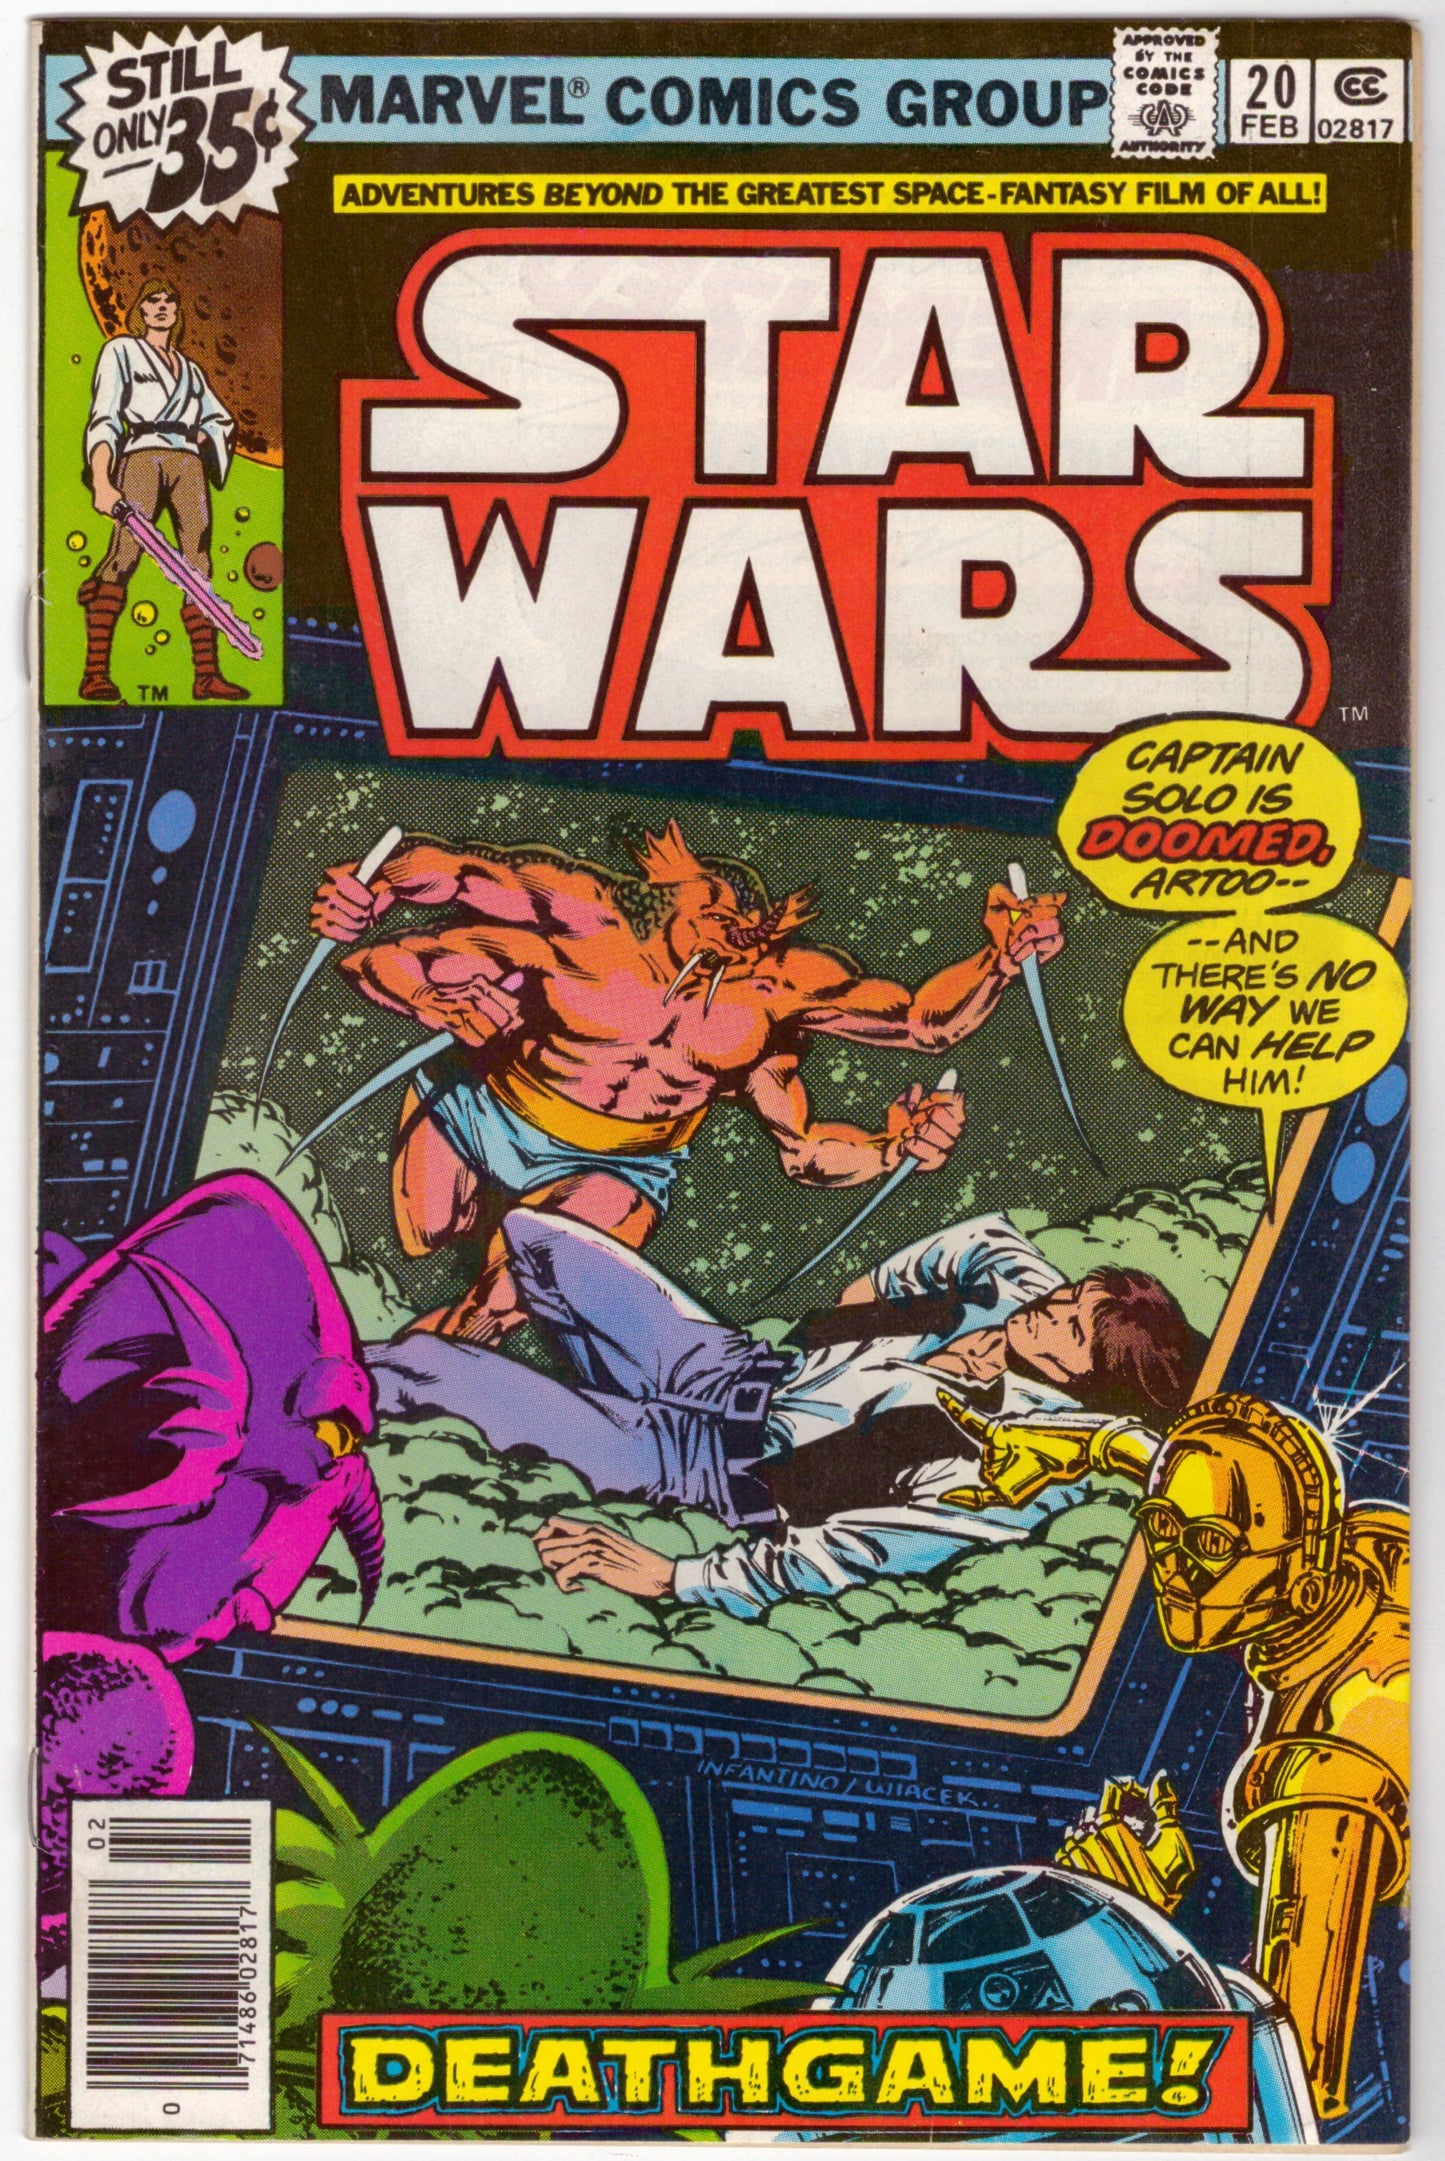 Guerres des étoiles (1977) # 20